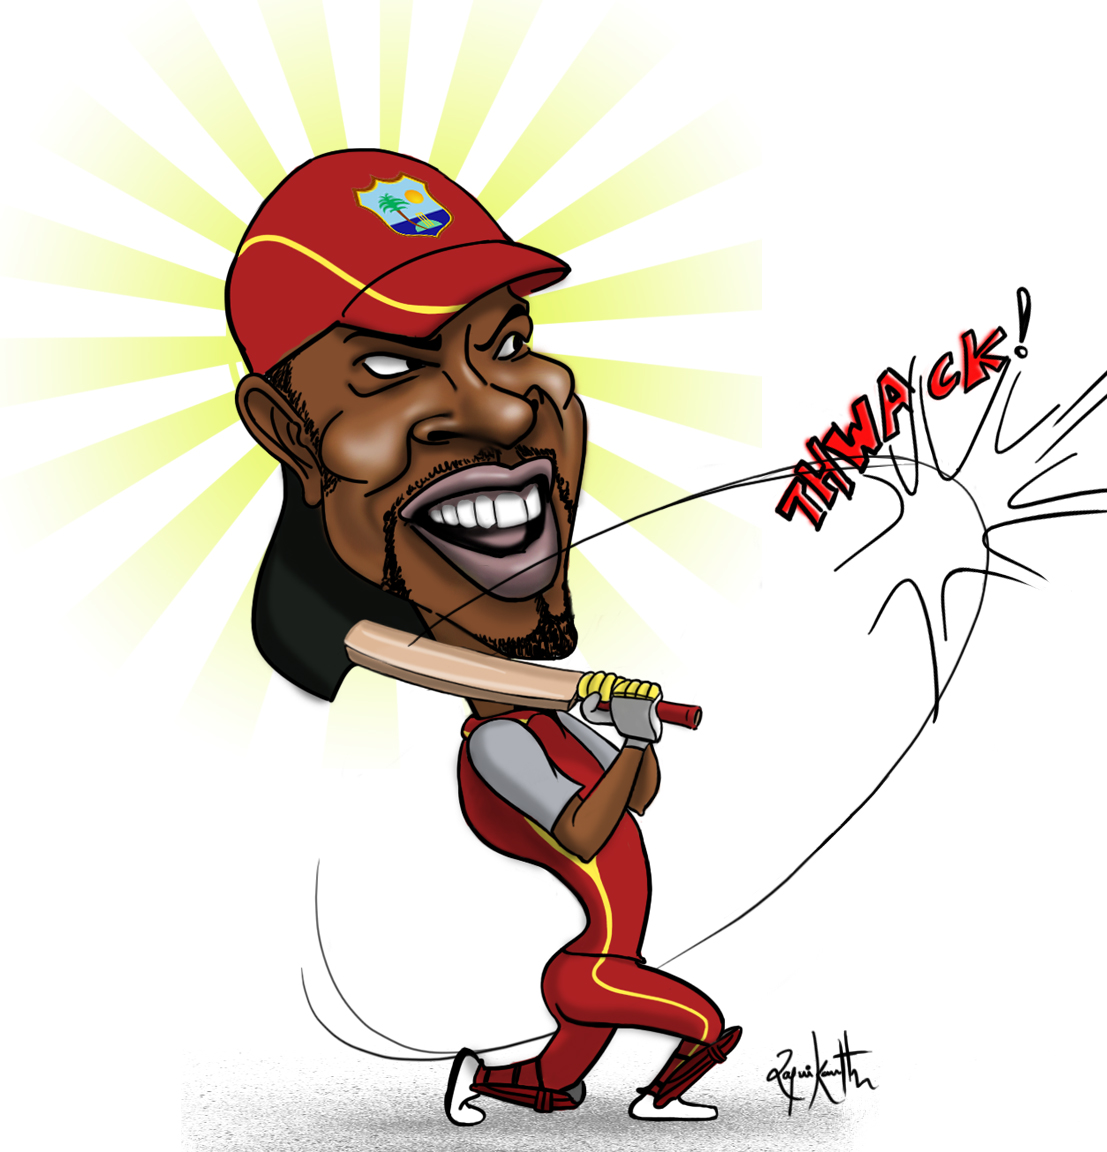 Chris Gayle_West Indies_cricket